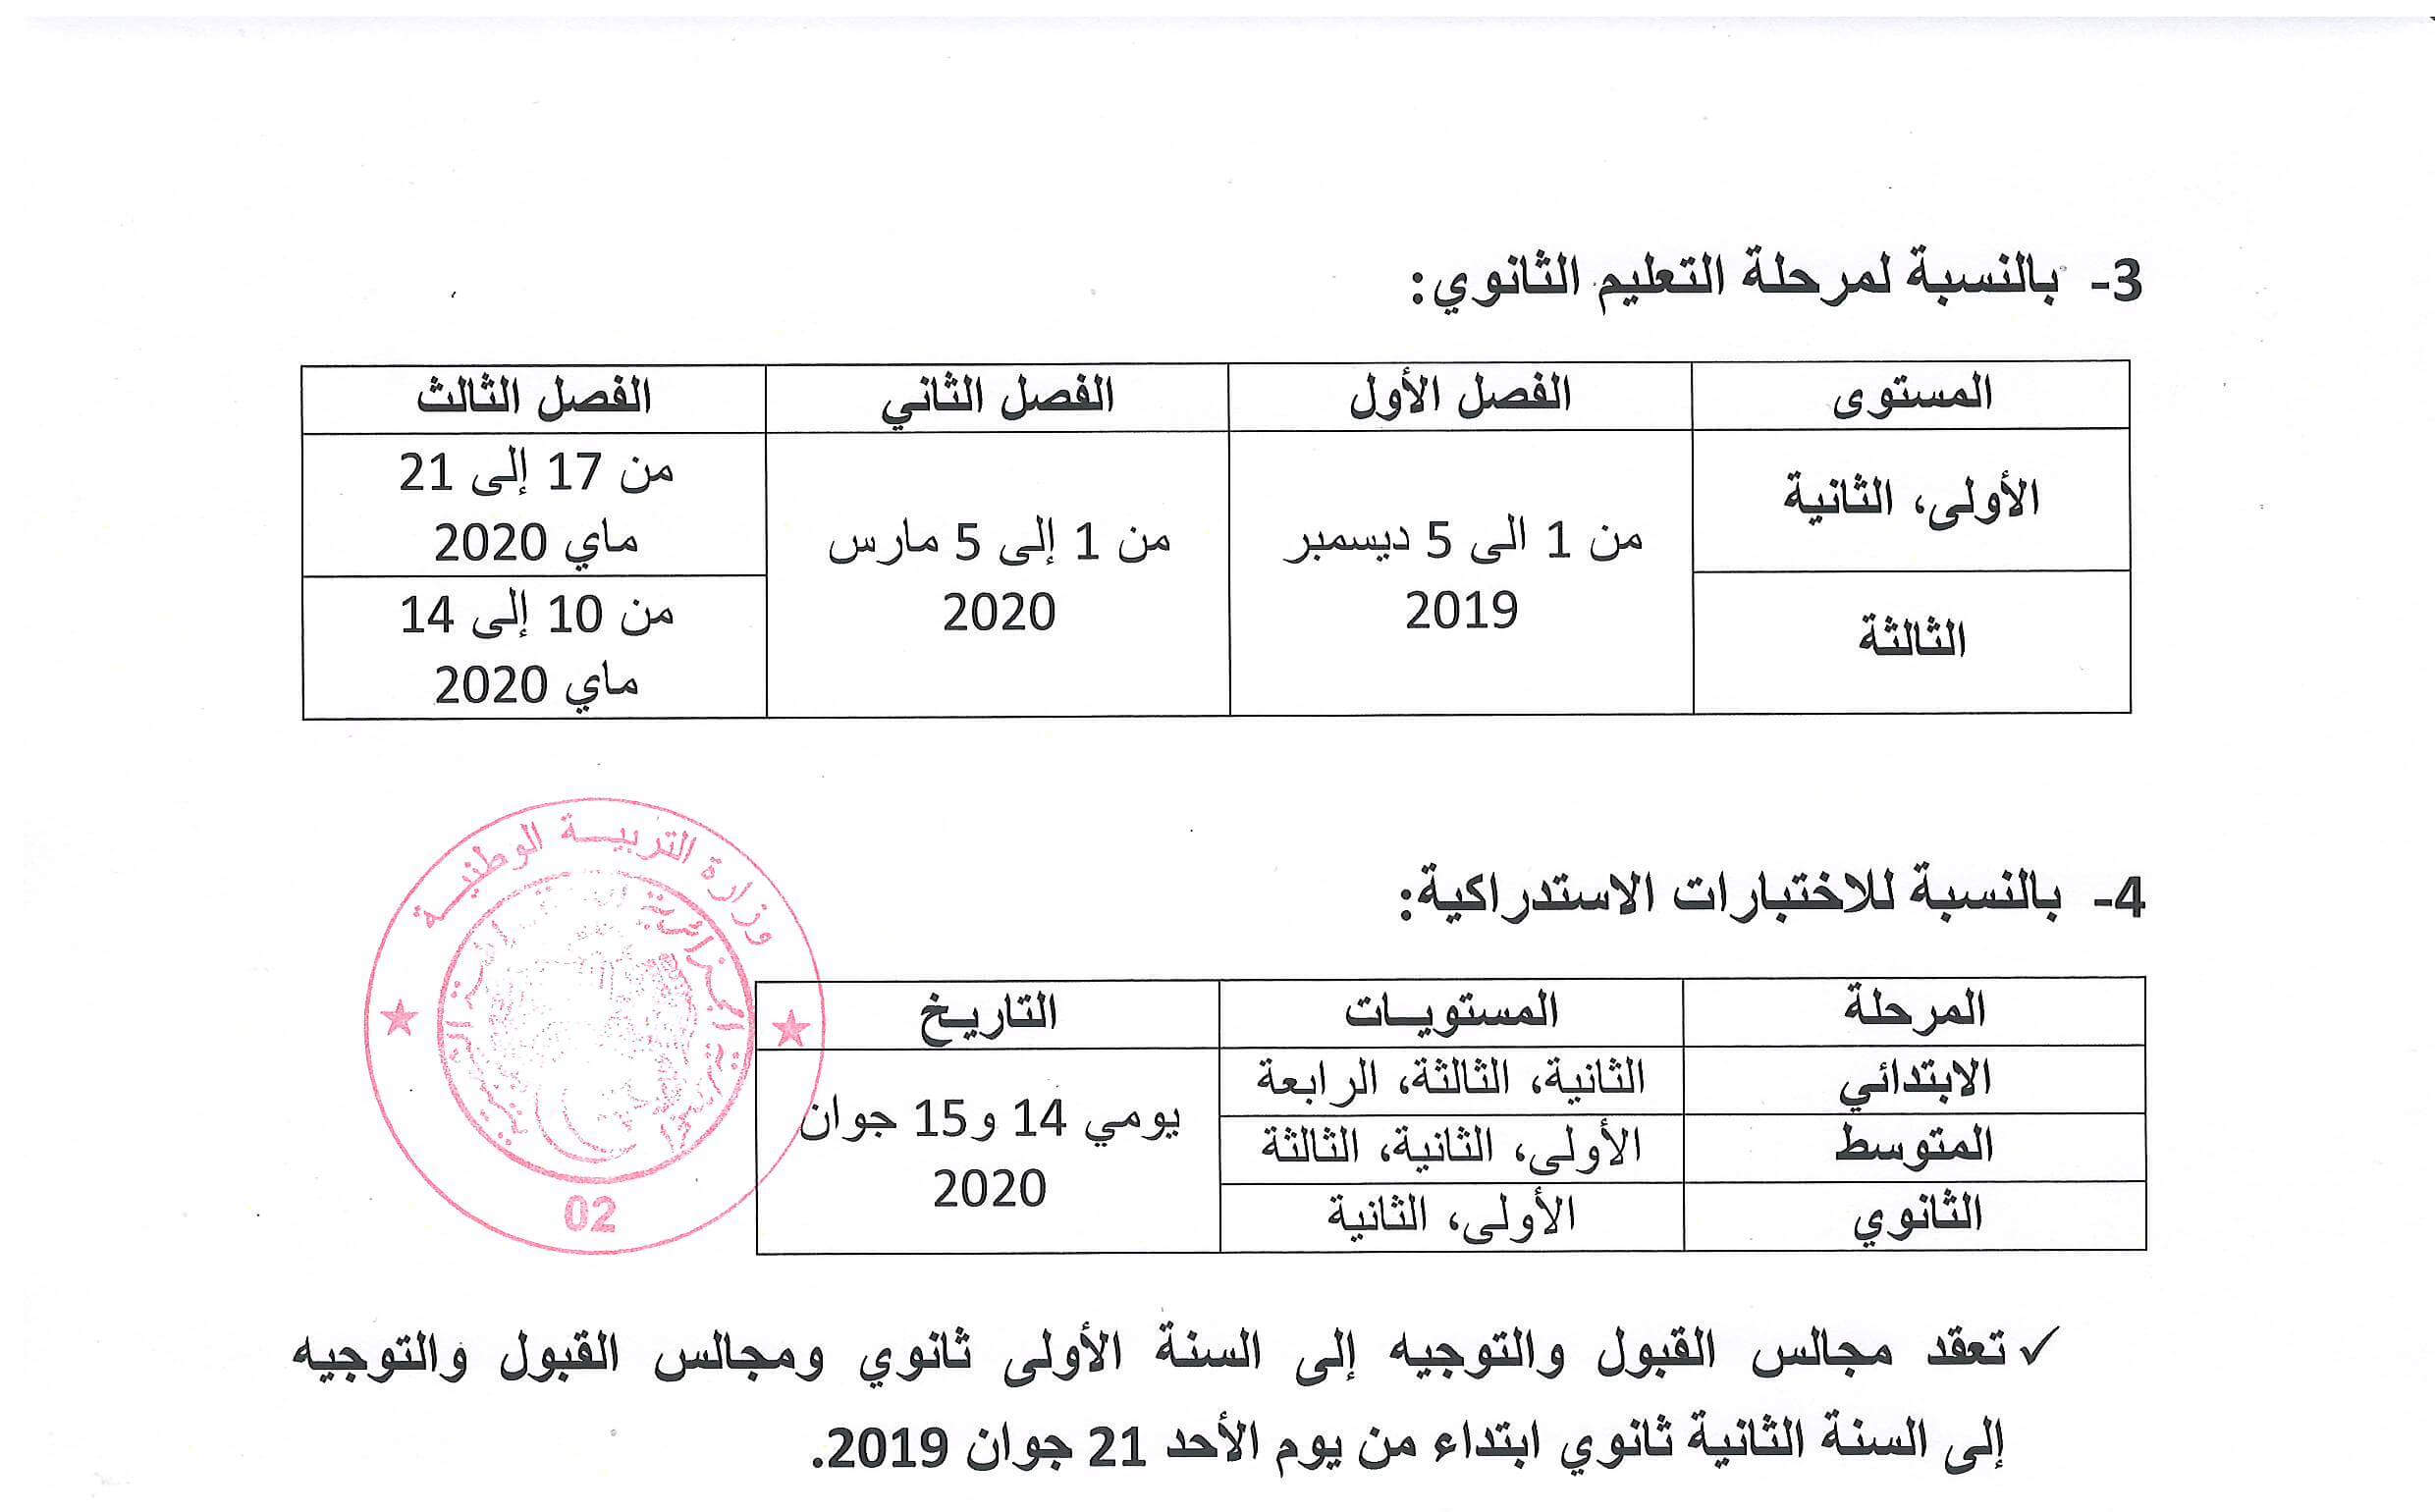 رزنامة الاختبارات الفصلية للسنة الدراسية 2020 2019 بكالوريا الجزائر